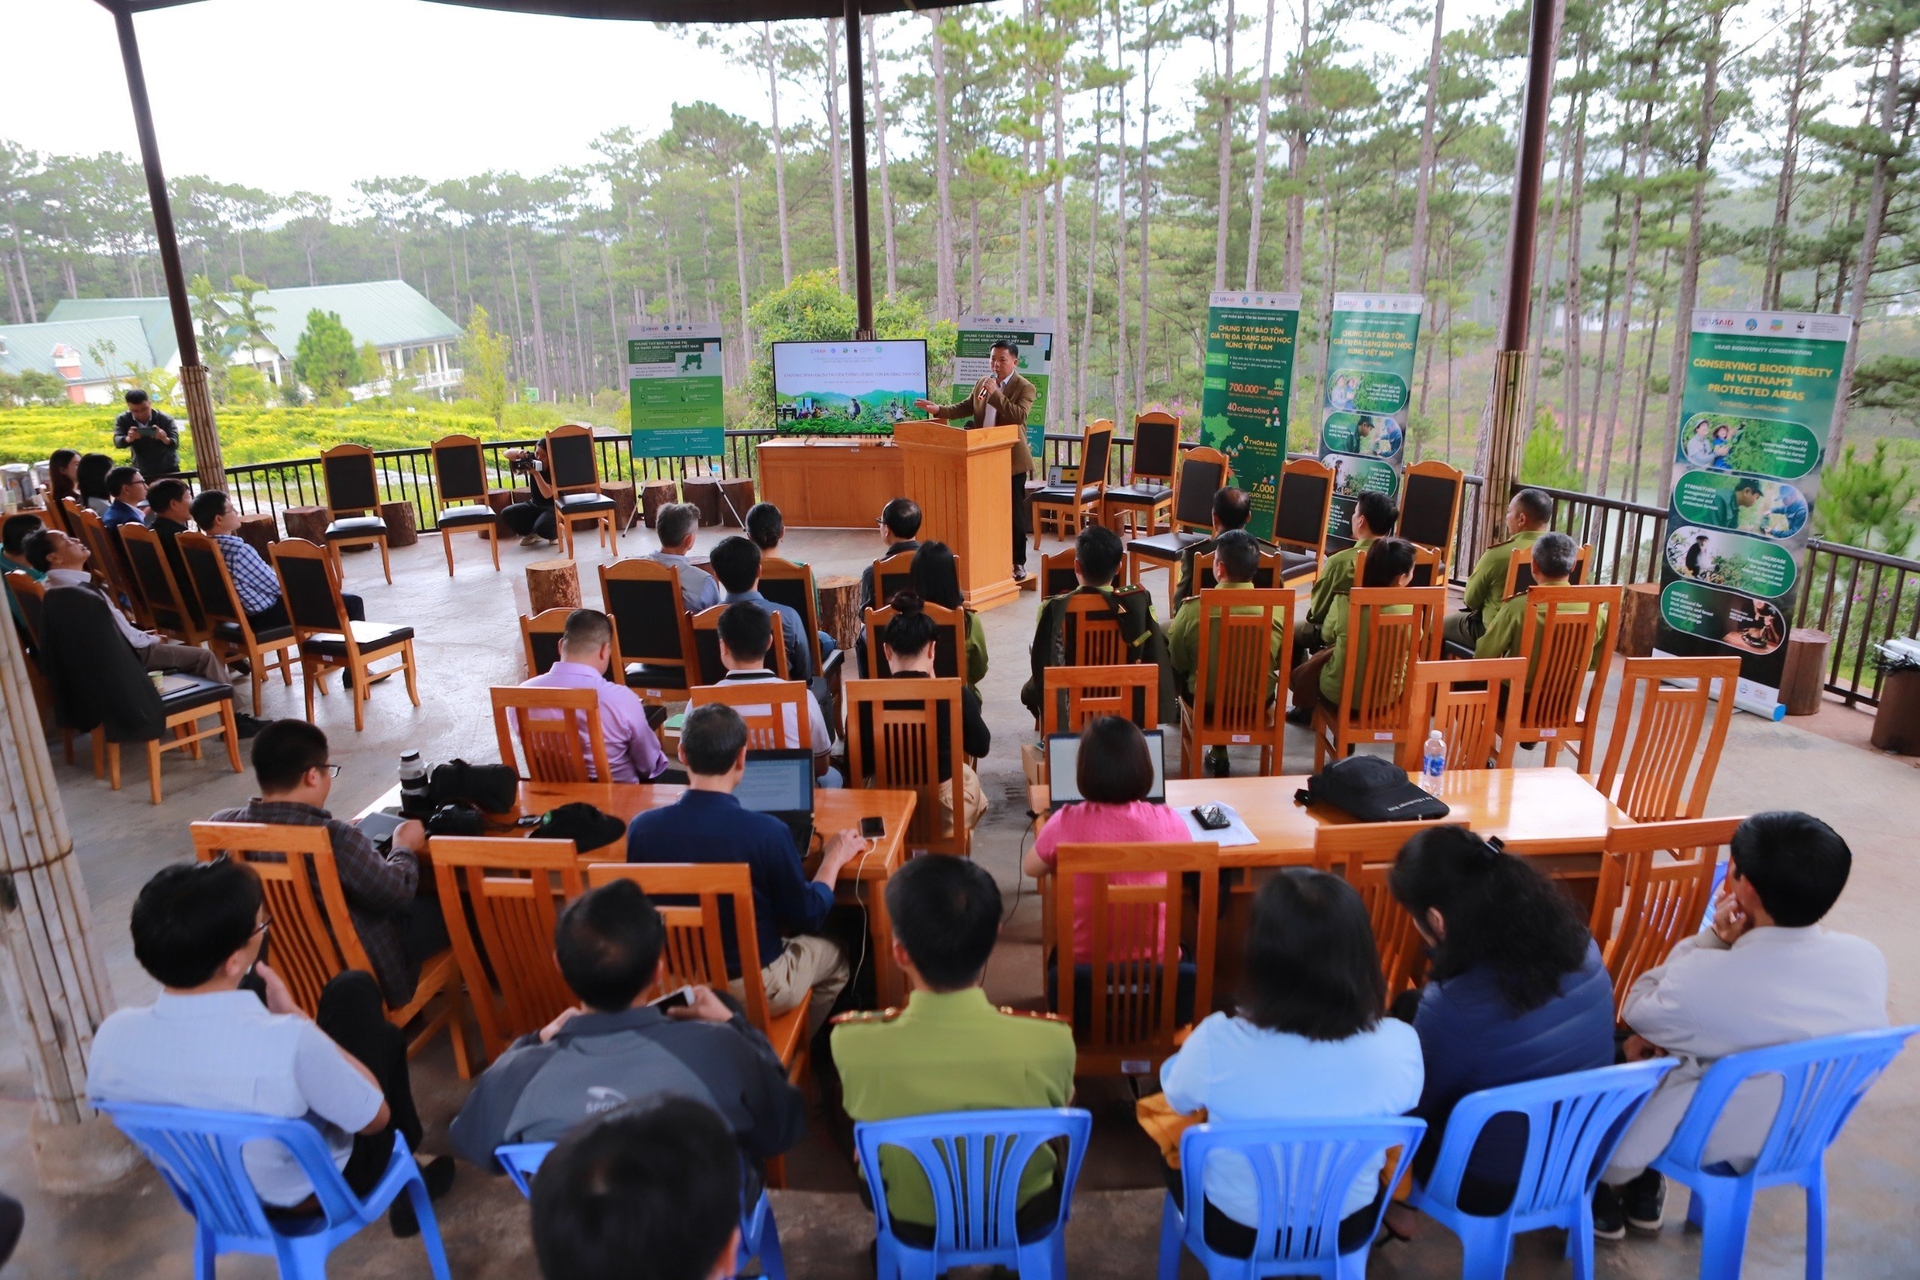 Tọa đàm chủ đề 'Phát triển du lịch sinh thái gắn với bảo tồn đa dạng sinh học' tại Vườn Quốc gia Bidoup Núi Bà, chiều 26/9. Ảnh: Thành Chương.